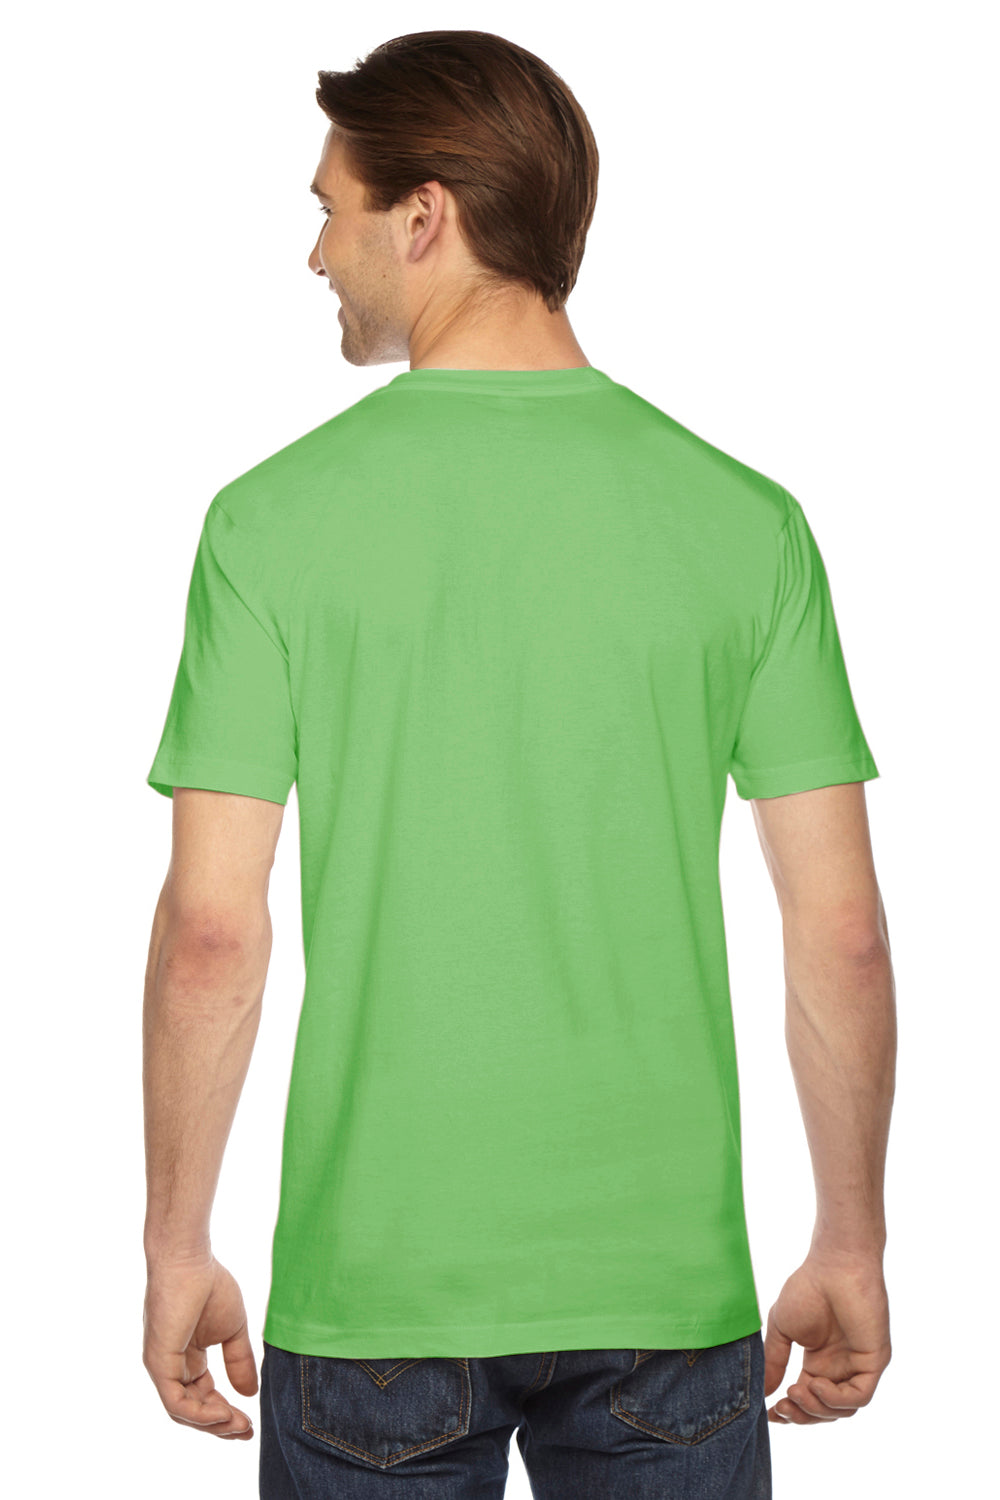 American Apparel 2001 Mens USA Made Fine Jersey Short Sleeve Crewneck T-Shirt Grass Green Back